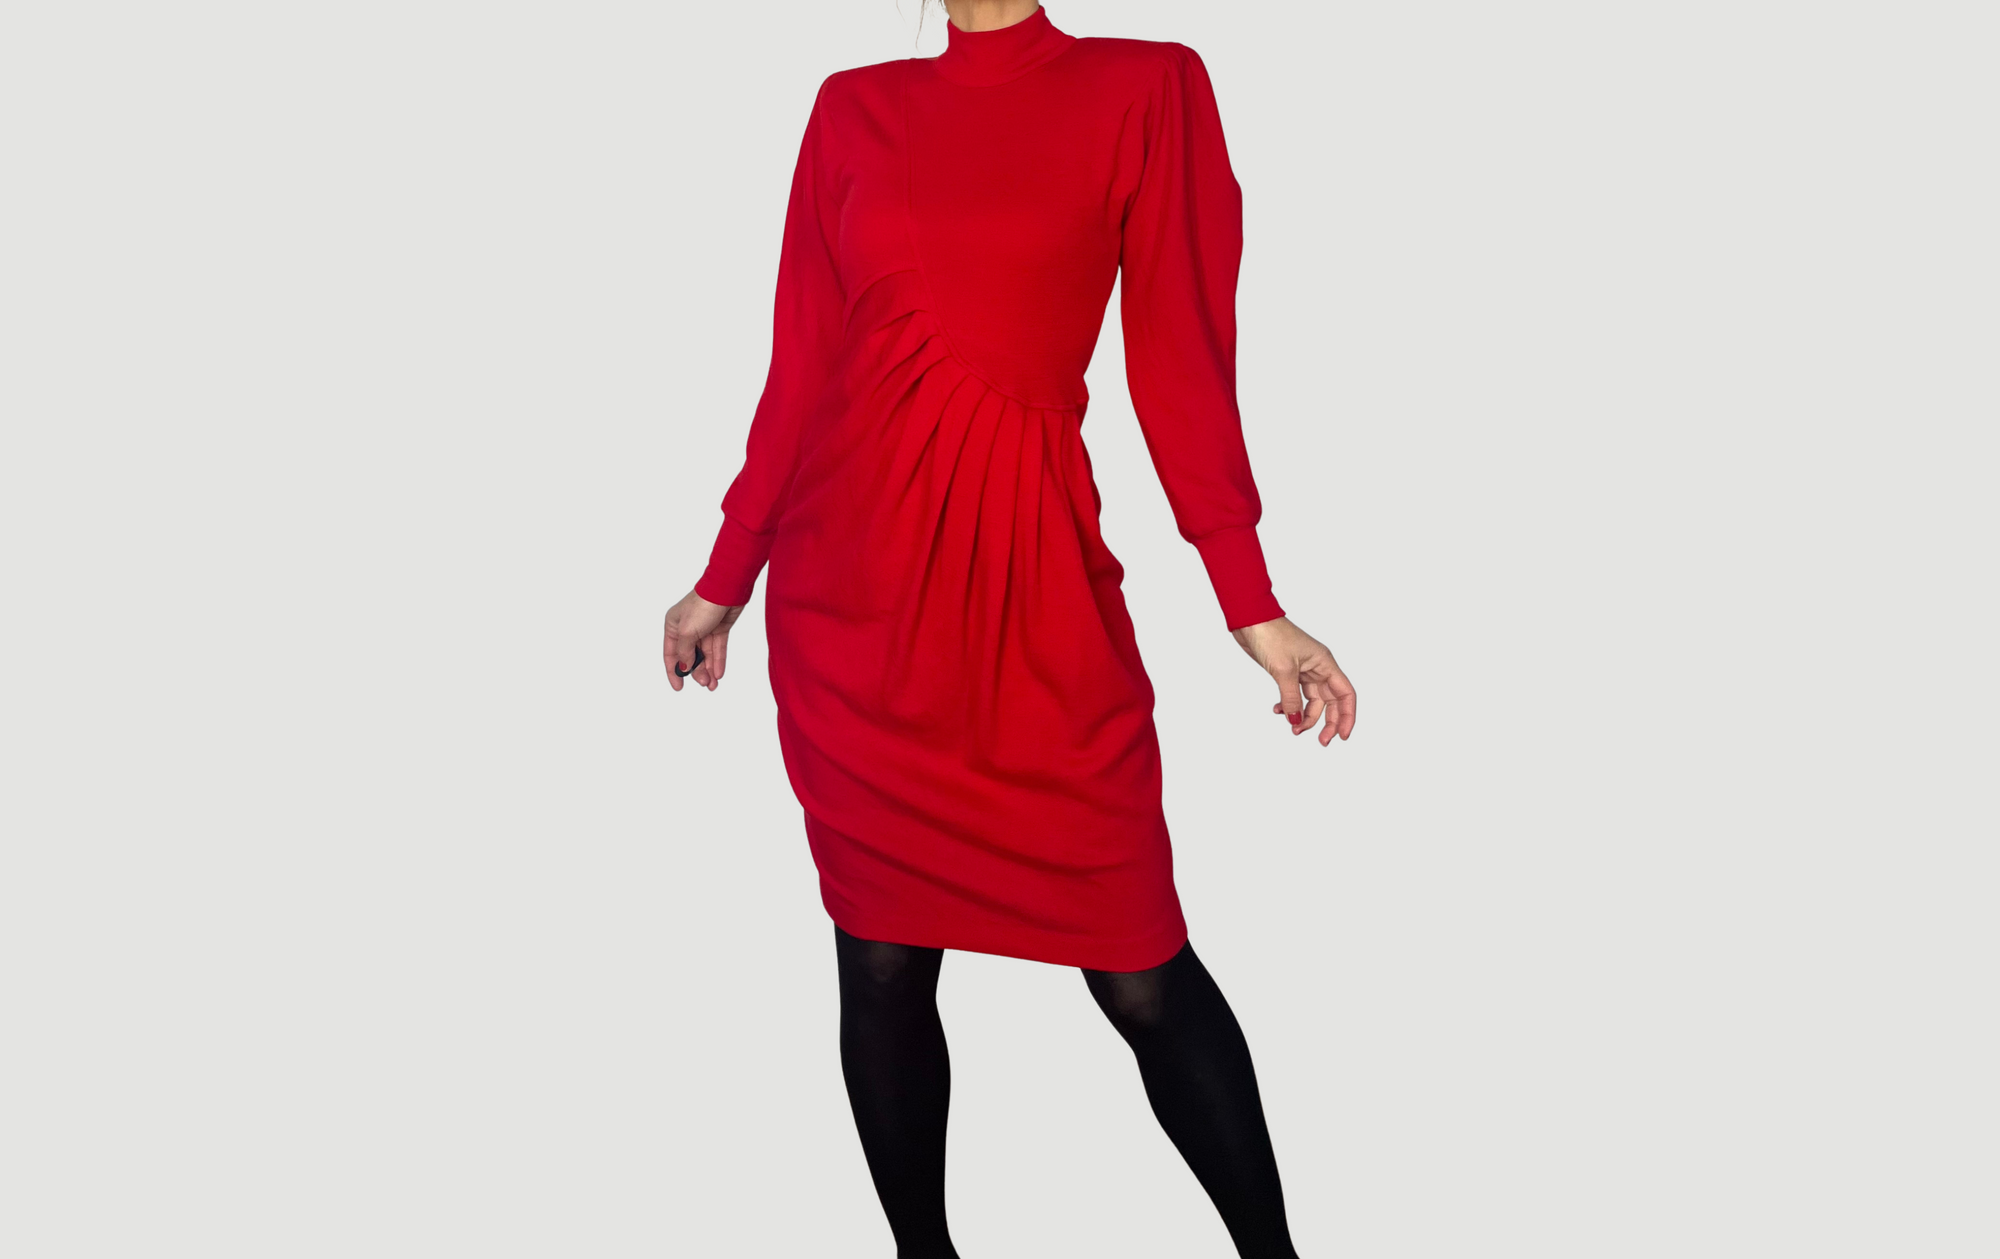 Vintage Long sleeves Red Dress